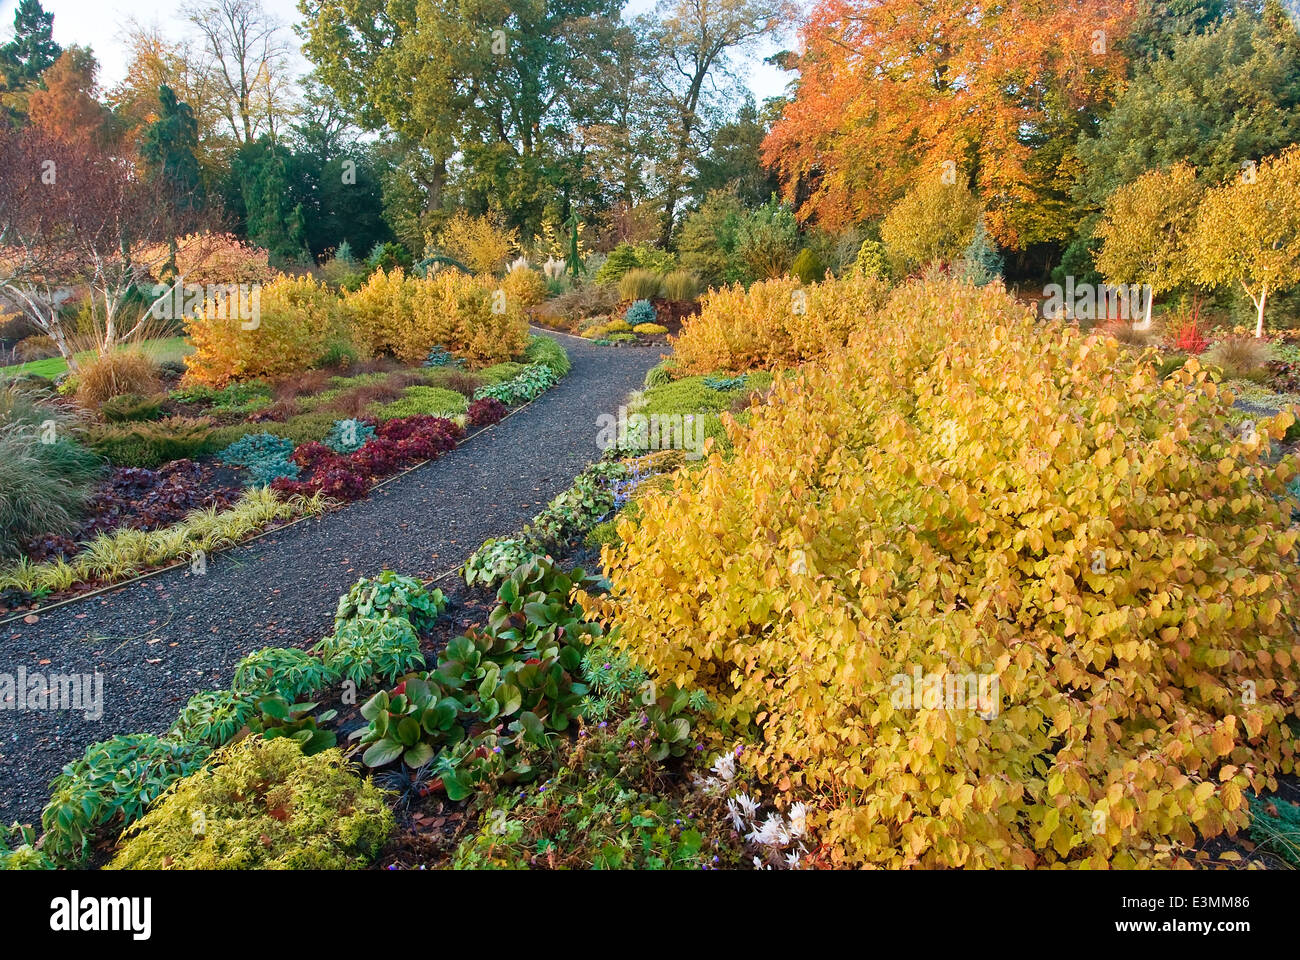 Der Wintergarten im Herbst. Bressingham Gardens, Norfolk, UK, Design: Adrian Bloom. Stockfoto